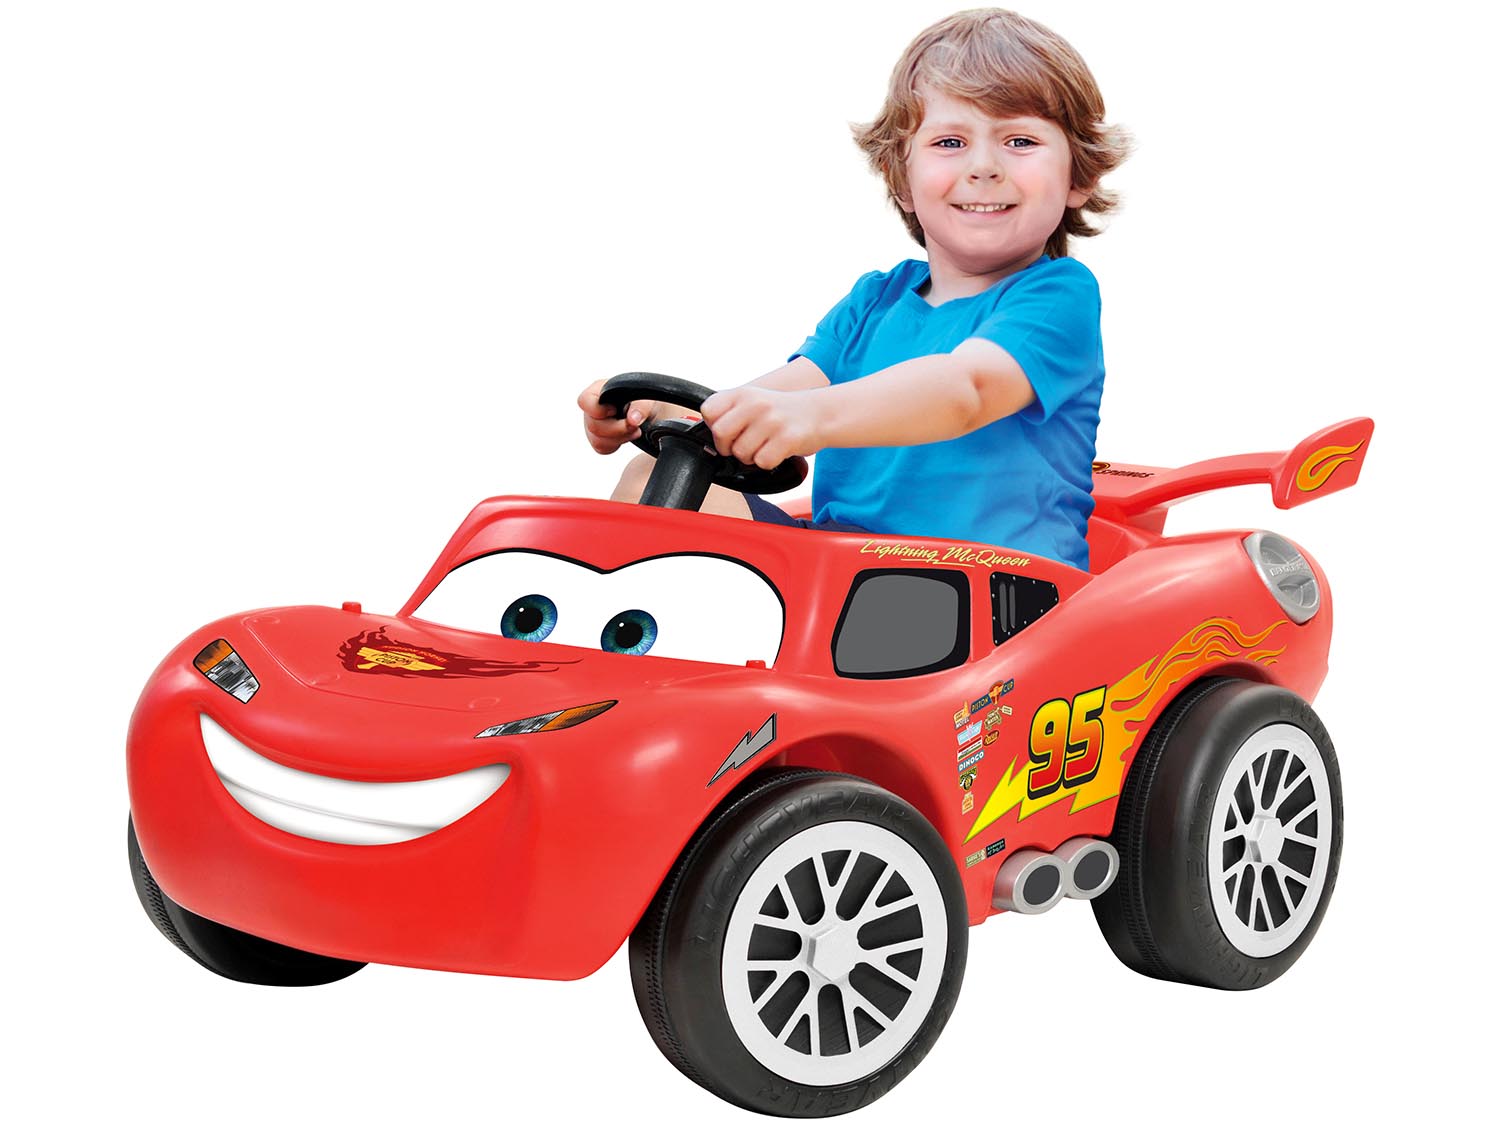 Carro de brinquedo infantil atinge um botão Transformar carro de